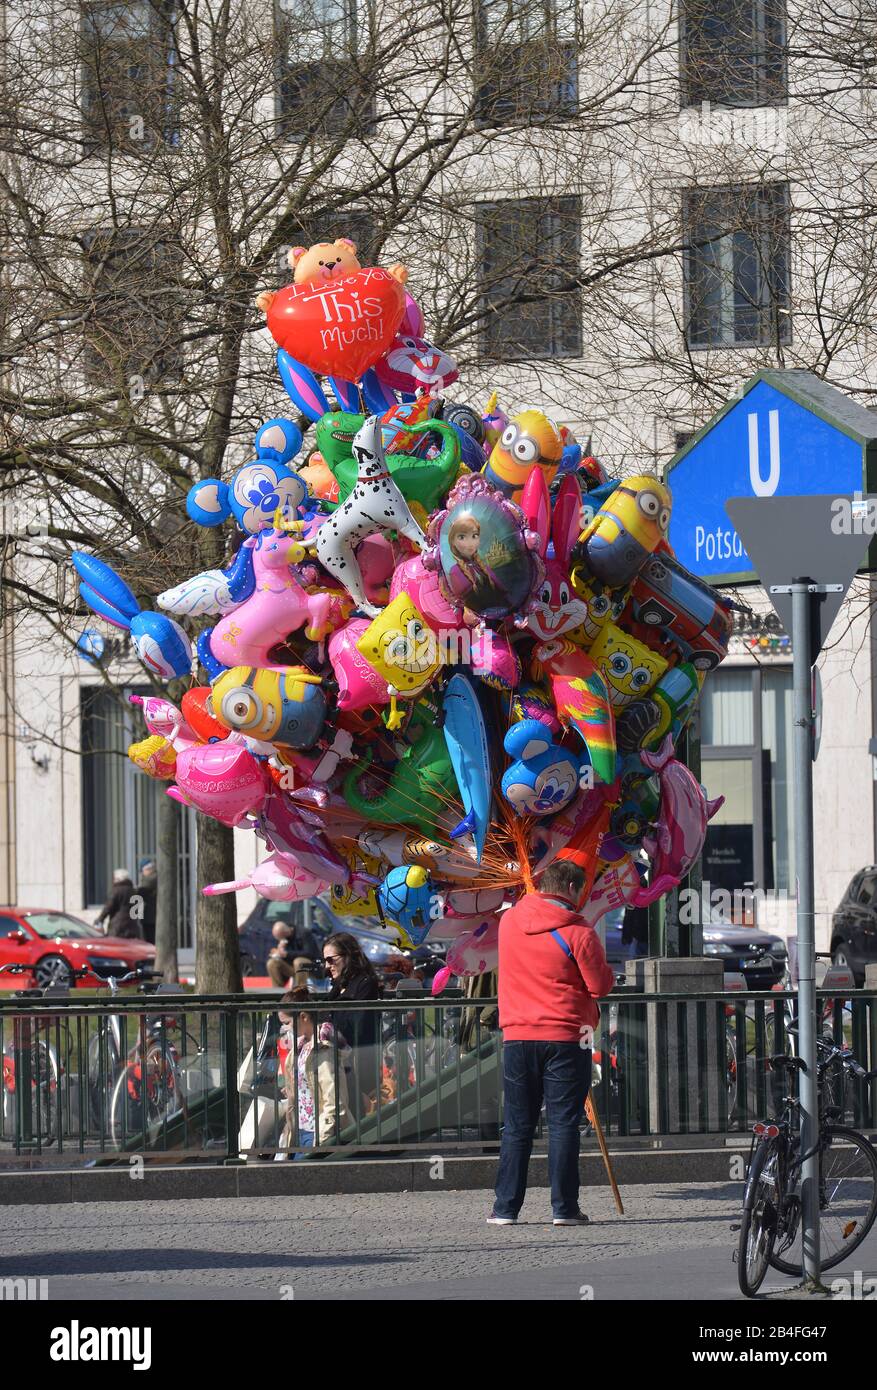 Ballonverkaeufer, Leipziger Platz, Mitte, Berlin, Deutschland Stock Photo